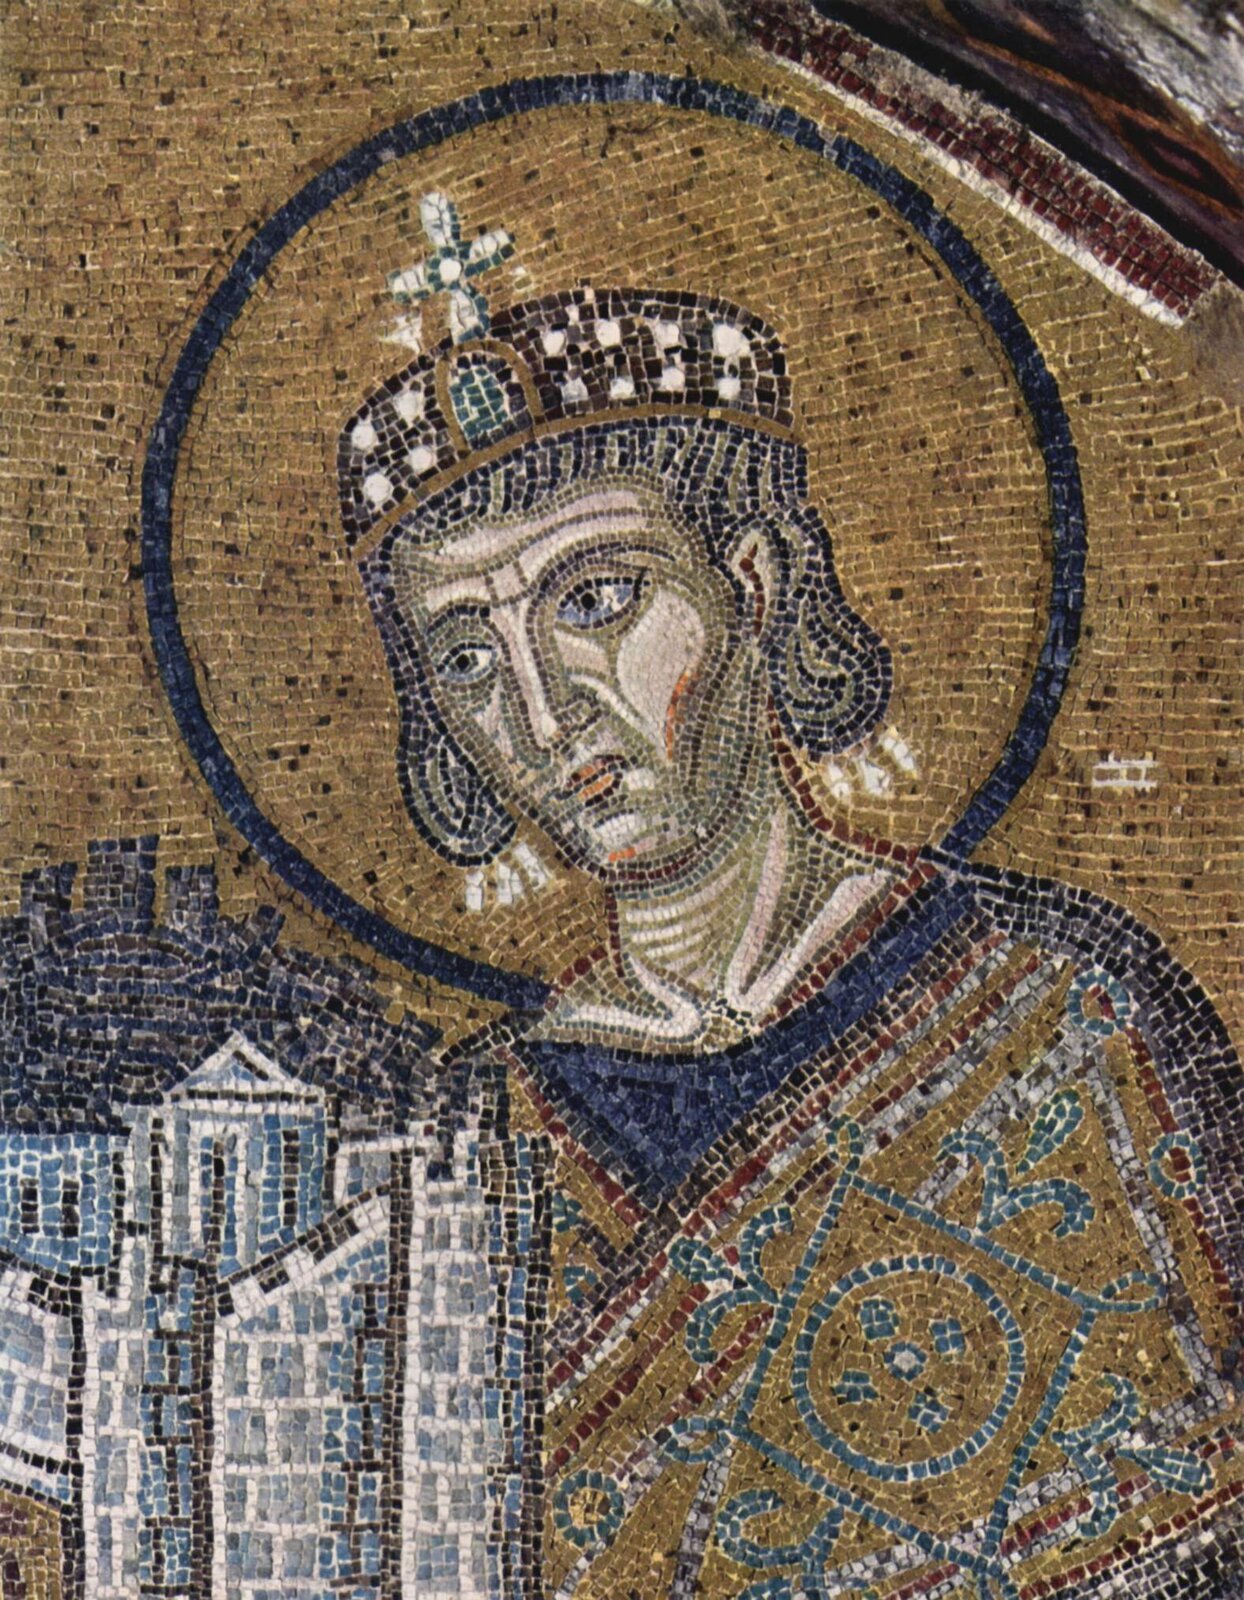 Mozaika przedstawia młodego mężczyznę z włosami do szyi. Na głowie ma koronę z krzyżem. Naokoło głowy twarzy widoczny jest niebieski okręg. Ubrany jest w niebiesko brązową szatę. W lewym dolnym rogu widoczny jest biało niebieski mur z wieżyczkami. Wszystko jest na beżowym tle.